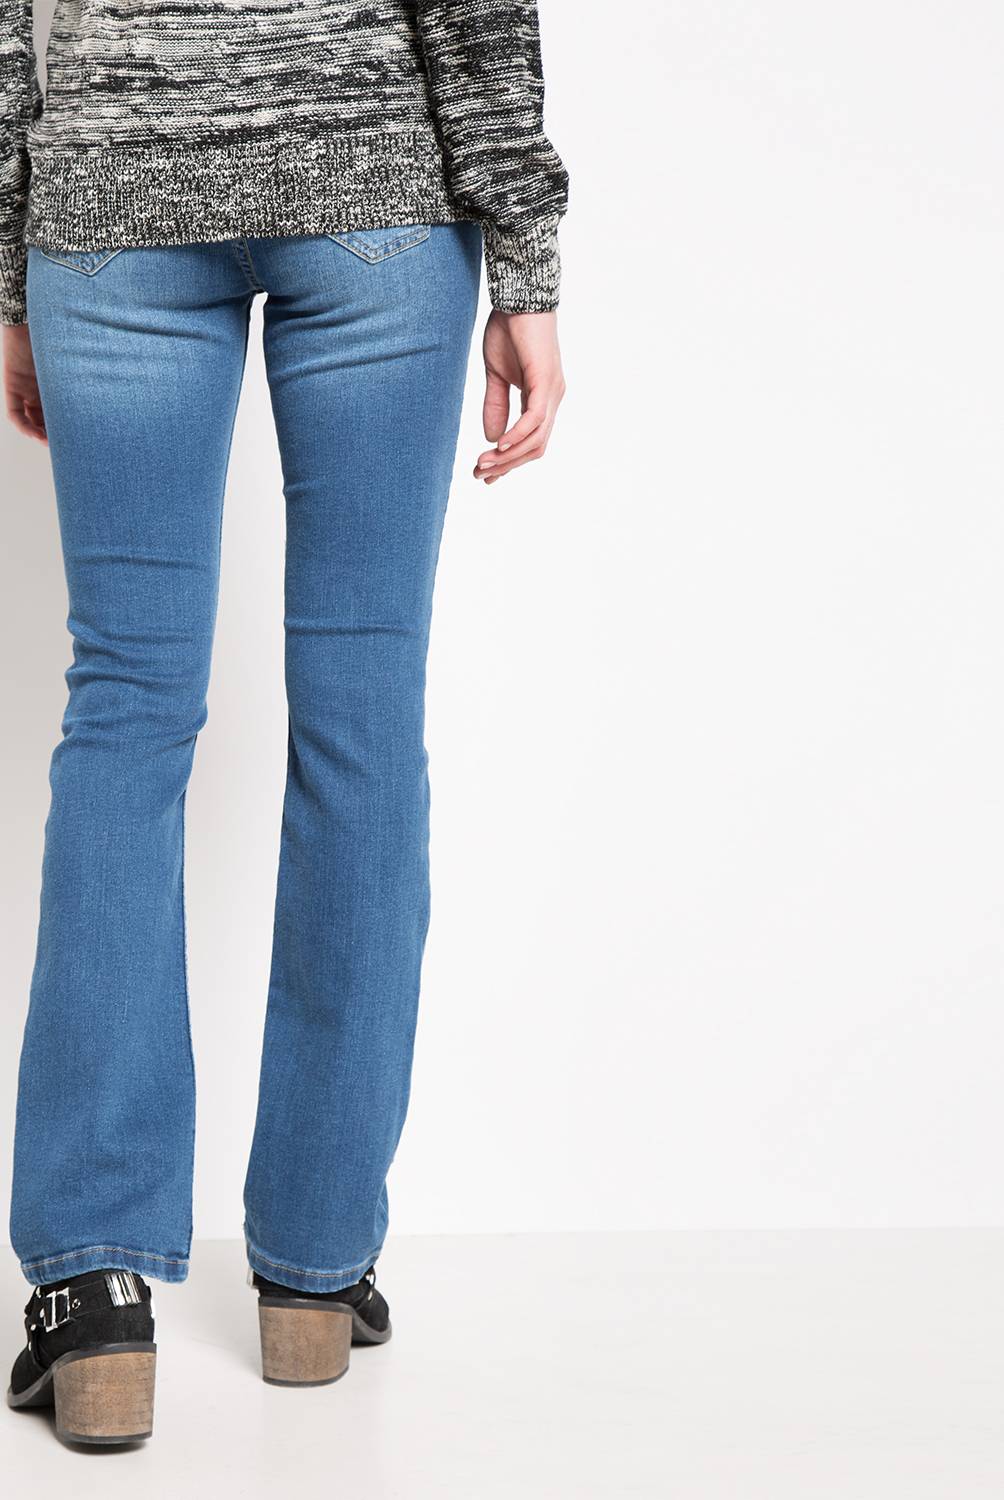 EFESIS - Jeans Straight Tiro Medio Mujer Efesis